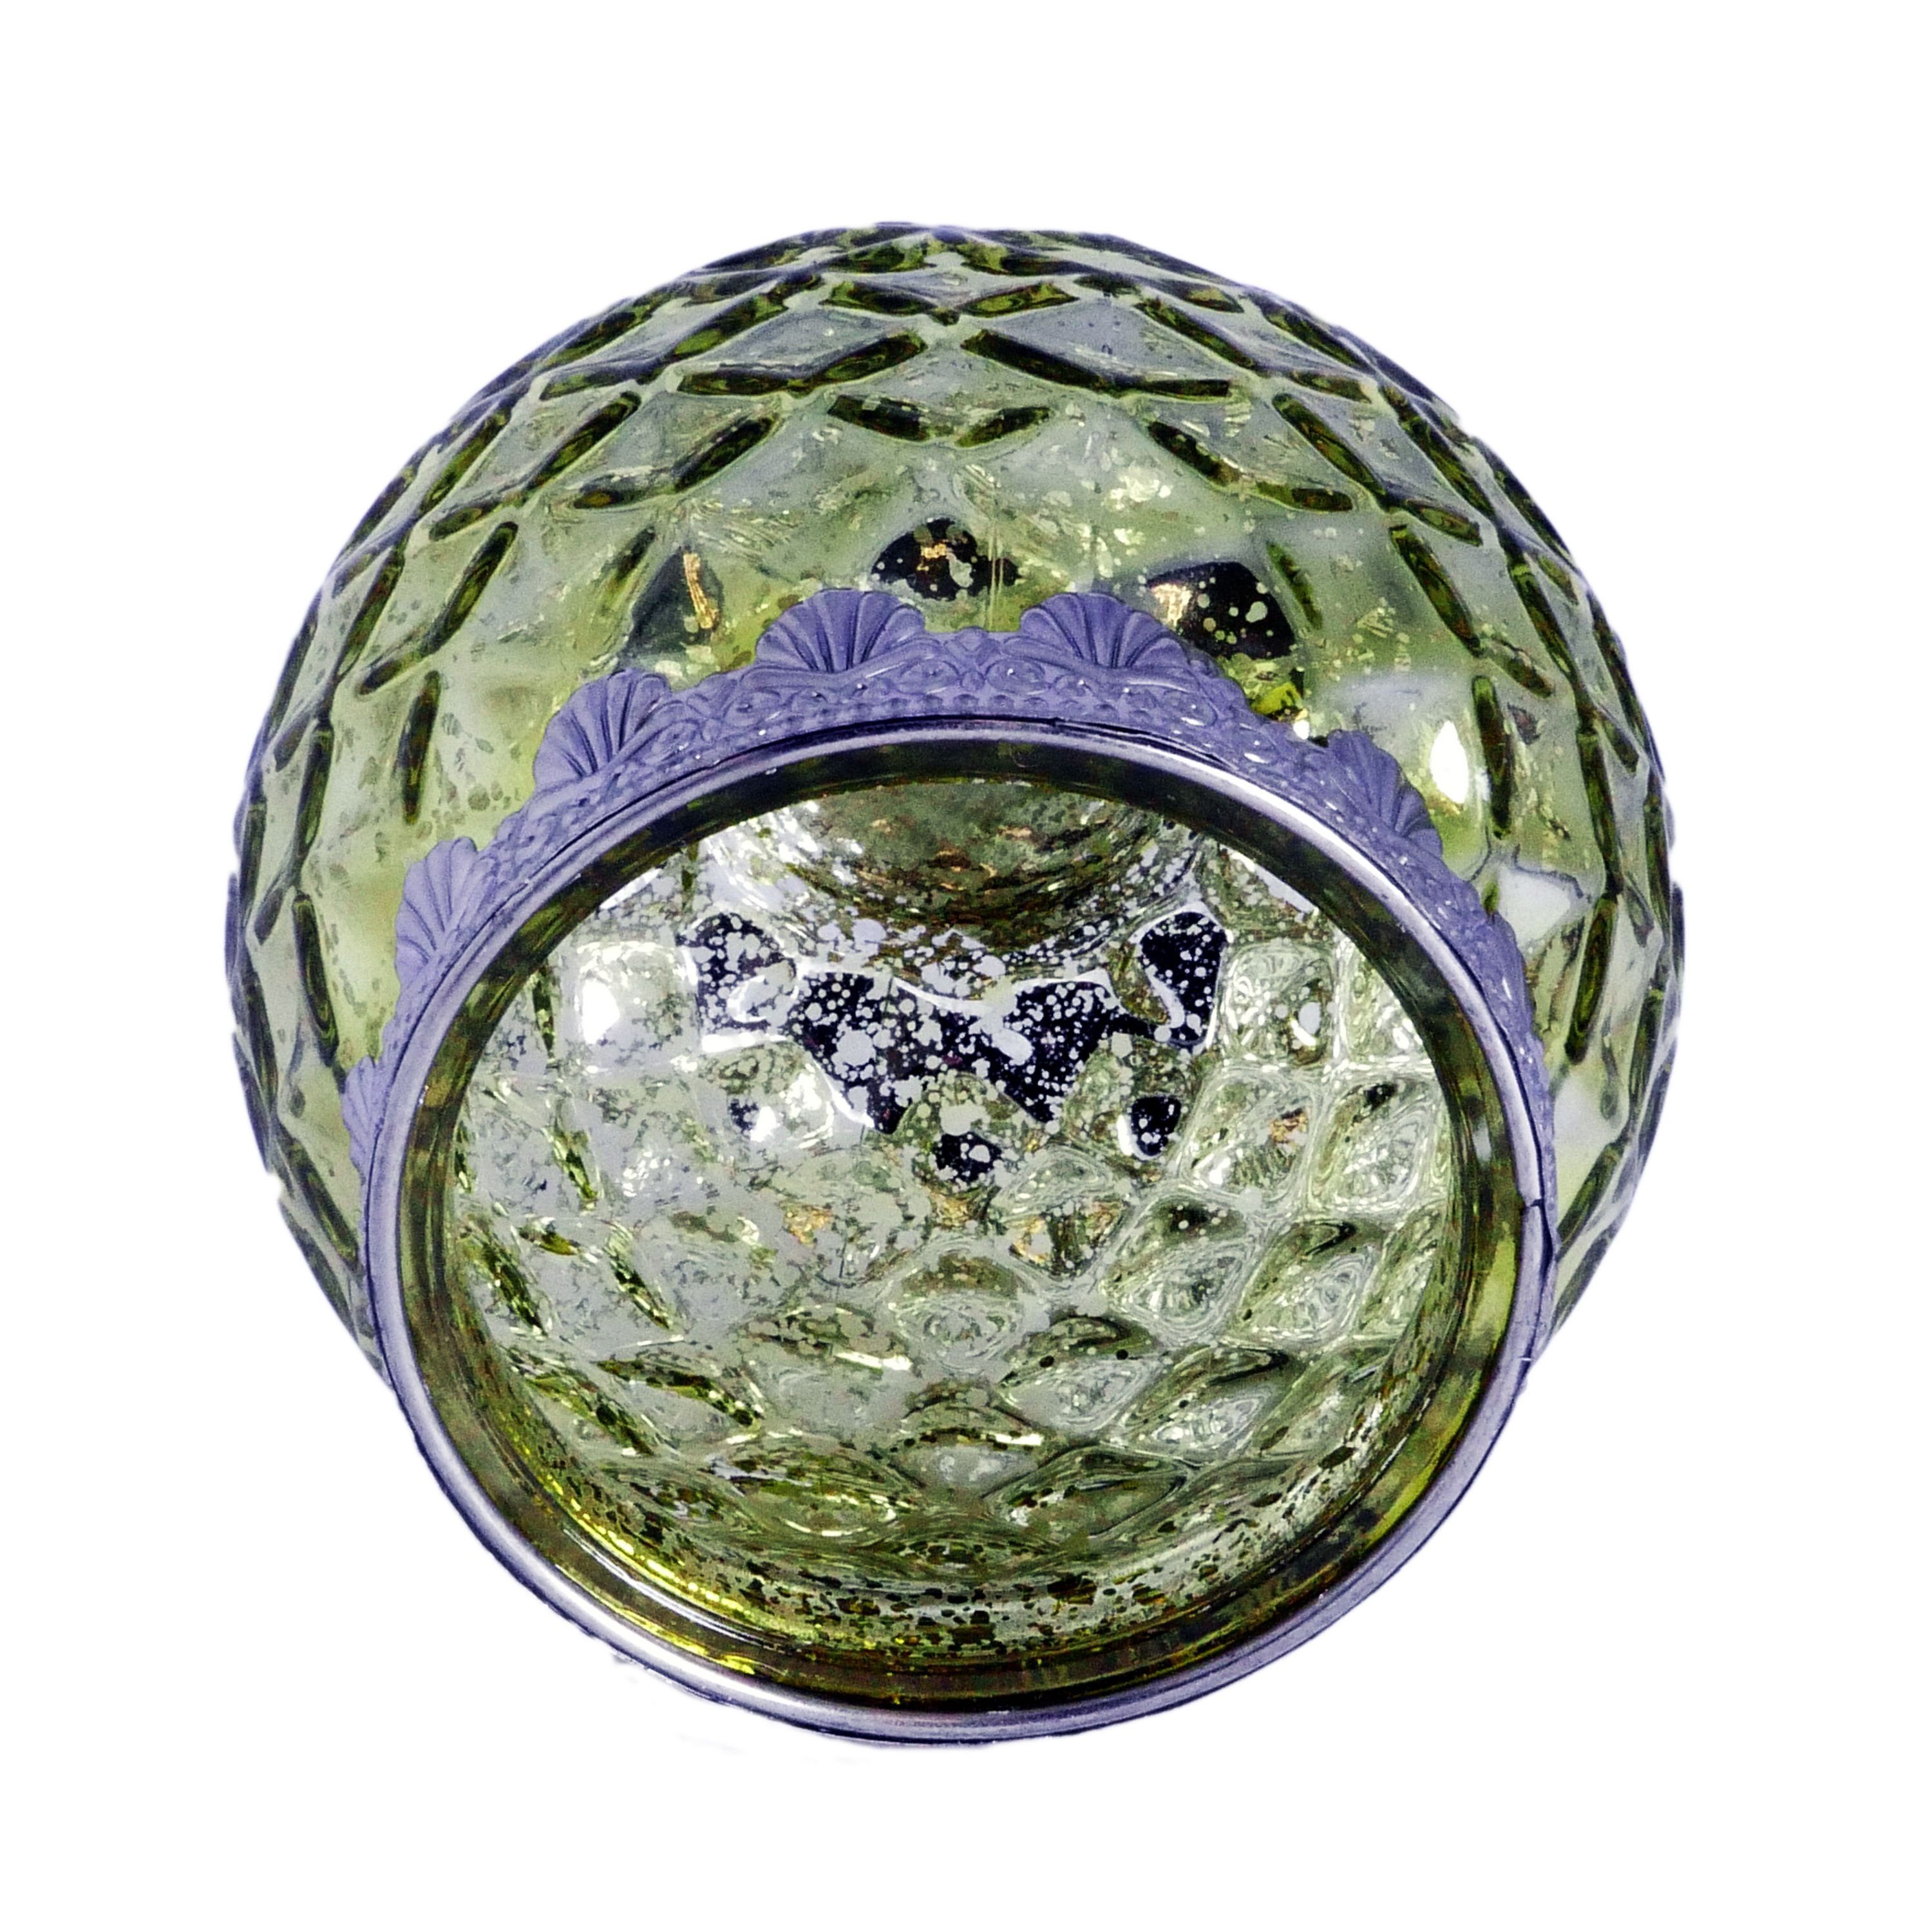 B&S Windlicht Teelichtglas grün Metall Zierrand